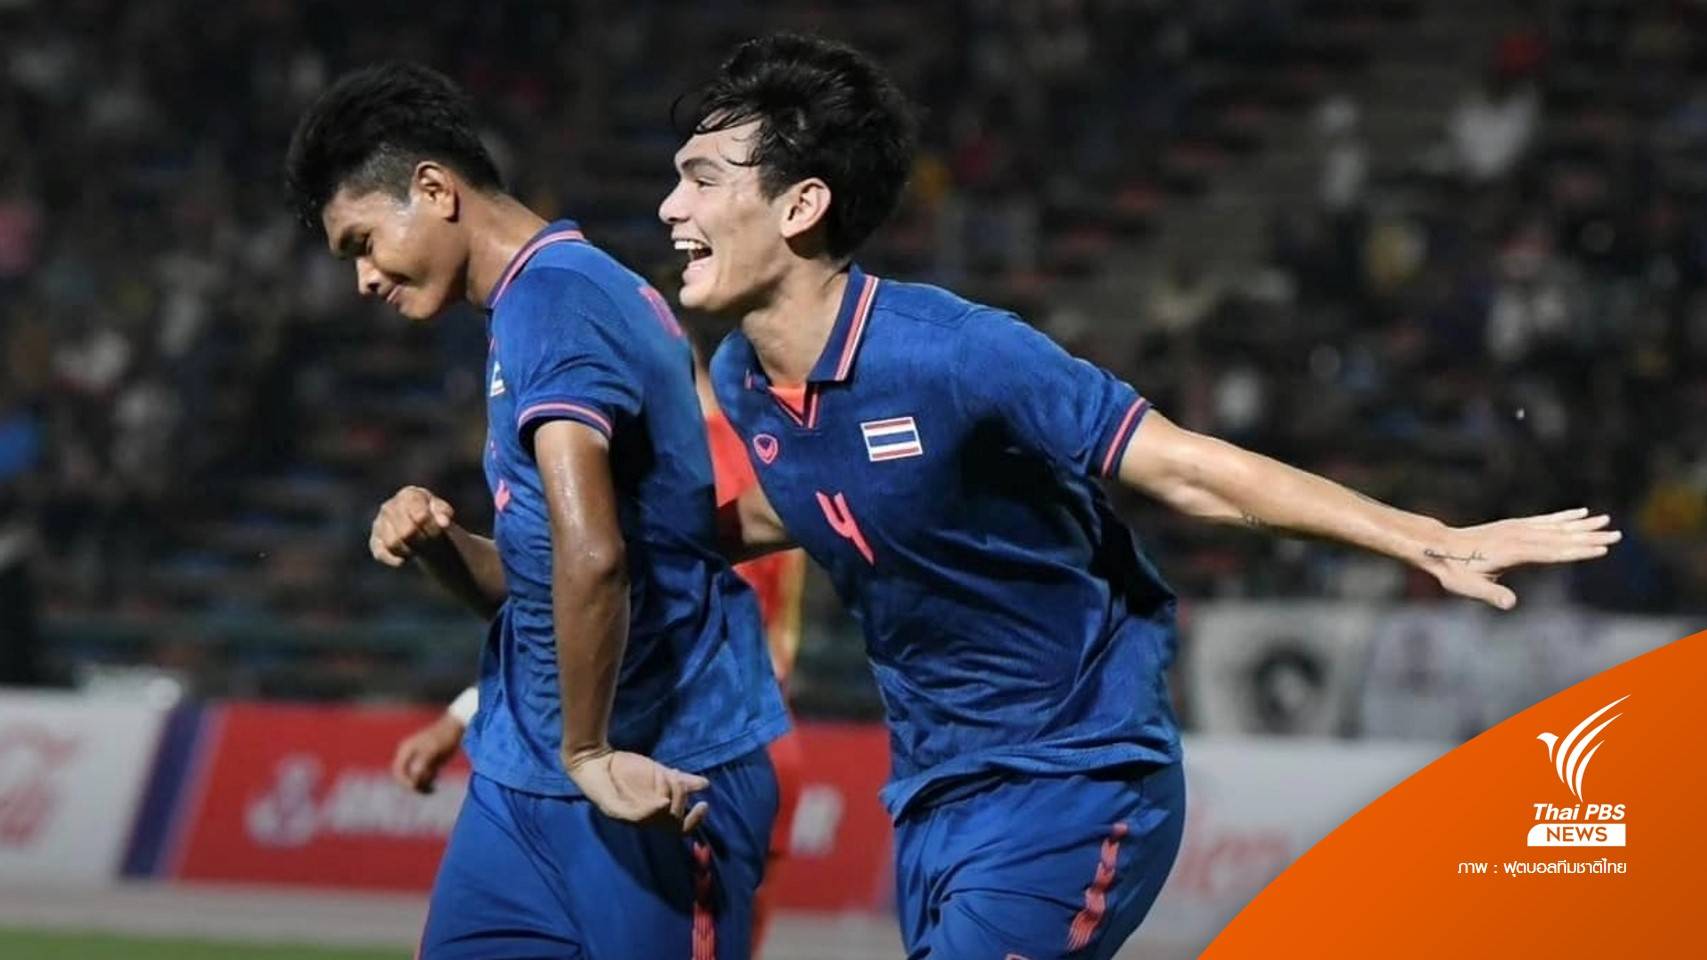 "โจนาธาร เข็มดี"  ประกาศเลิกเล่นทีมชาติไทย หลังจบศึกซีเกมส์ 